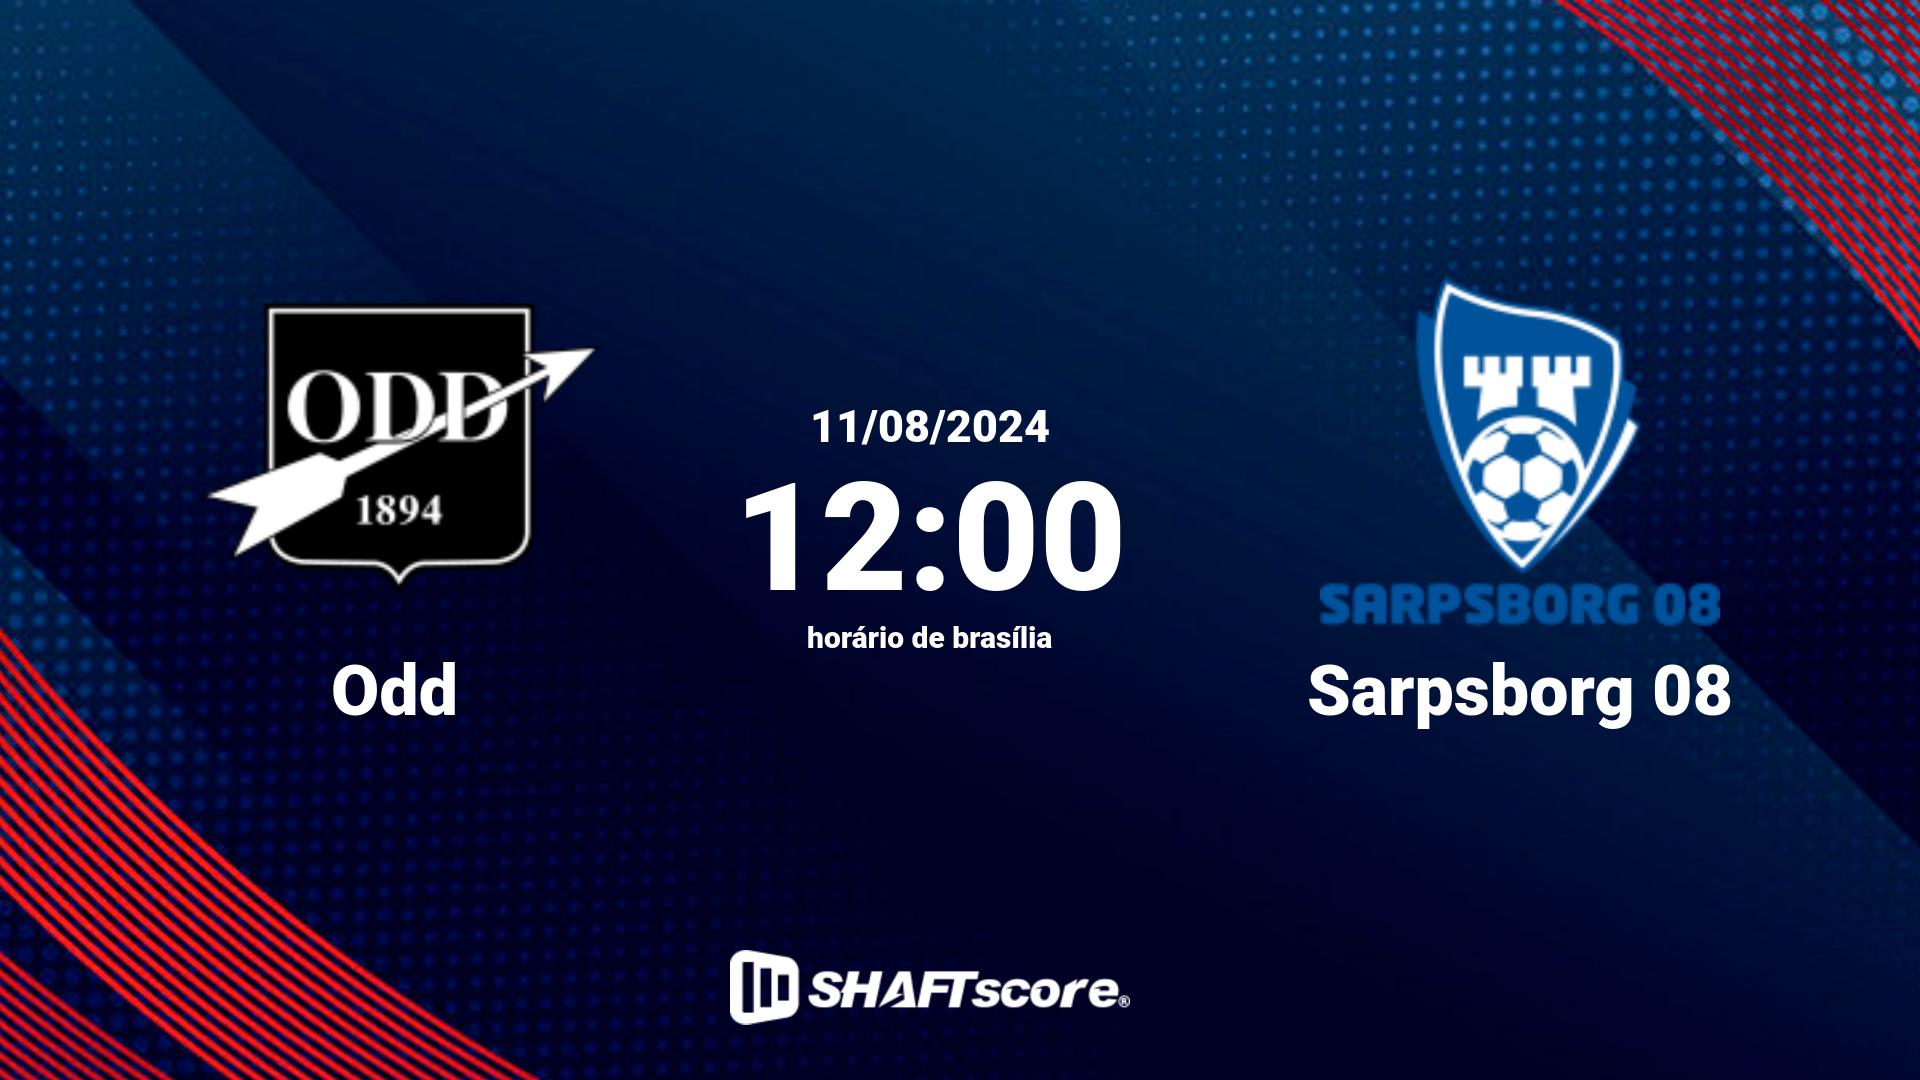 Estatísticas do jogo Odd vs Sarpsborg 08 11.08 12:00